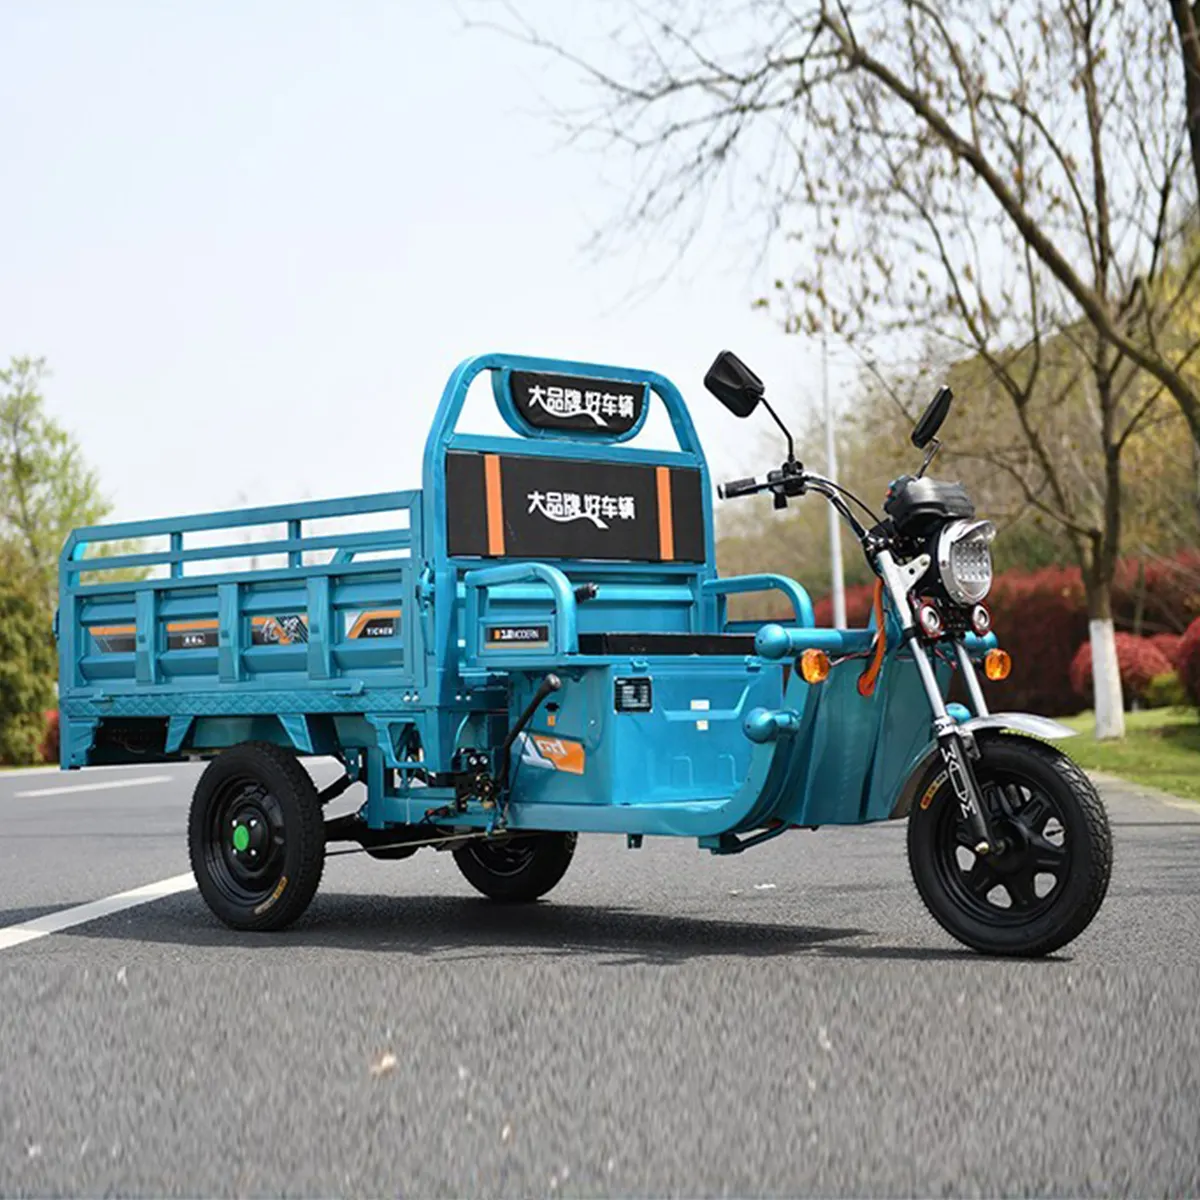 Üç tekerlekli scooter motosiklet elektrikli çin kapalı kullanım üç tekerlekli bisiklet kabin kargo üç tekerlekli bisiklet ile elektrikli üç teker bisikletler cerrado